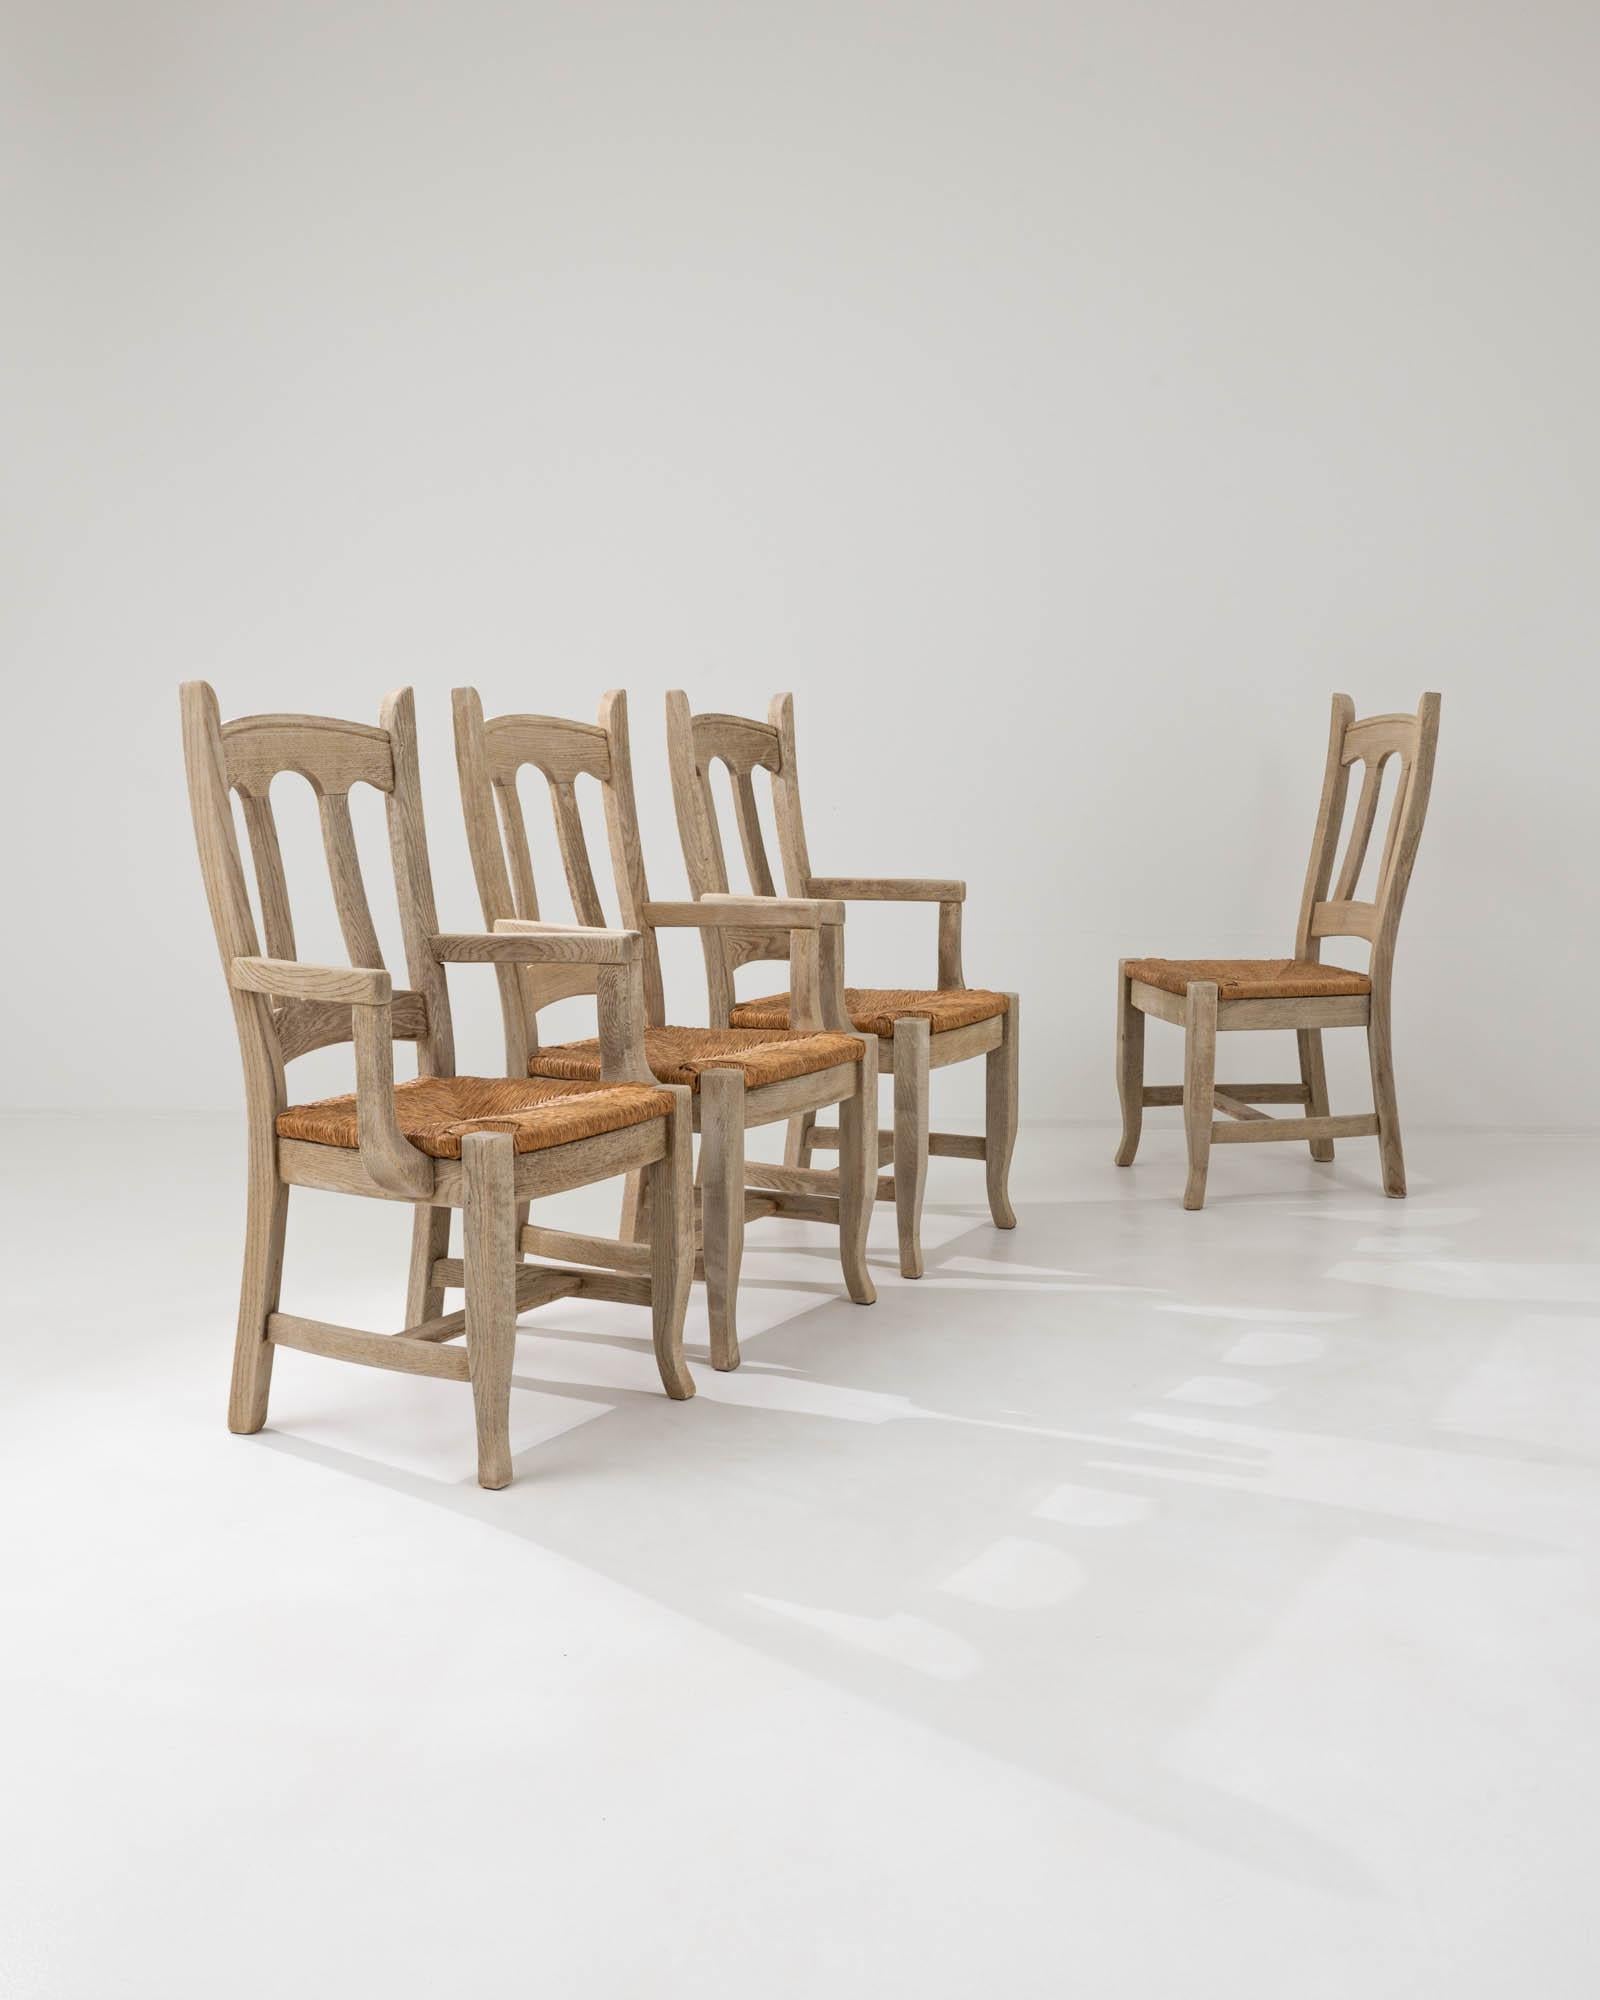 Fabriqué à la main en Belgique au XXe siècle, cet ensemble de quatre chaises de salle à manger présente une silhouette gracieusement fluide façonnée par des dossiers subtilement inclinés et des accoudoirs incurvés qui se développent organiquement